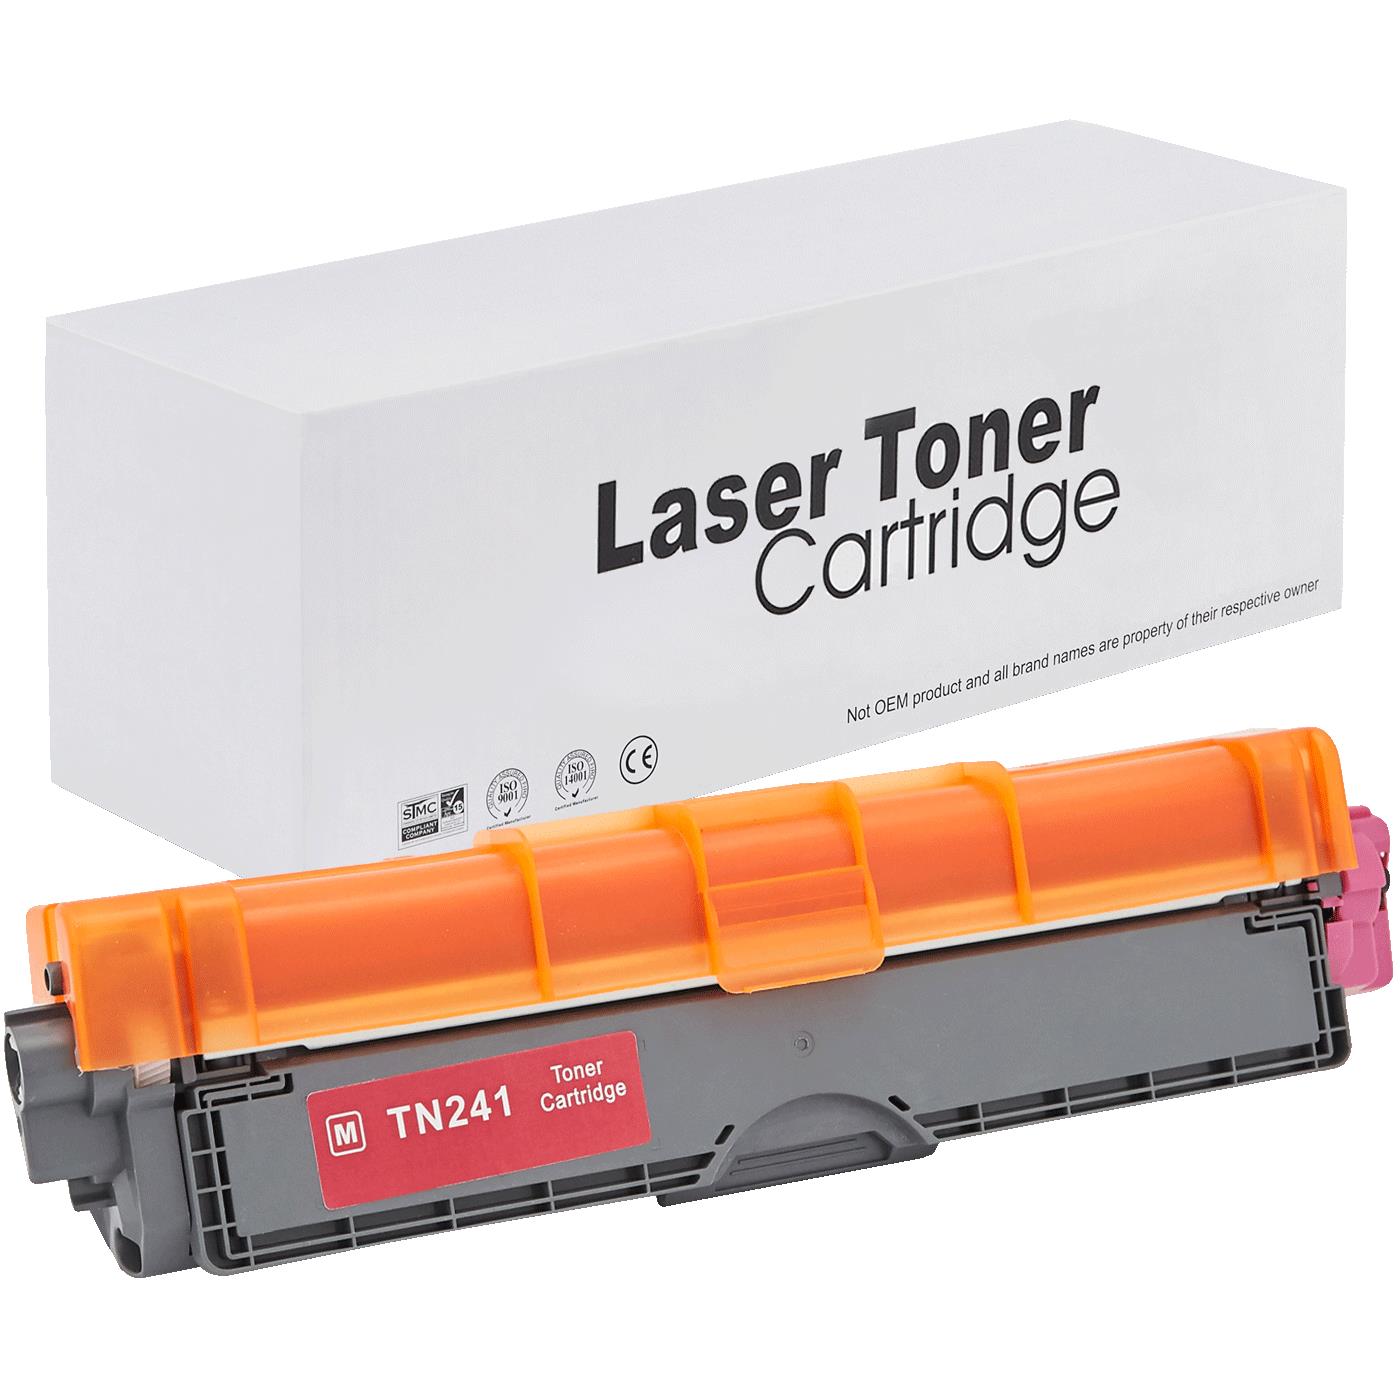 съвместима тонер касета за принтери и печатащи устройства на Brother HL-3170 CDW Toner BR-241M | TN241M. Ниски цени, прецизно изпълнение, високо качество.